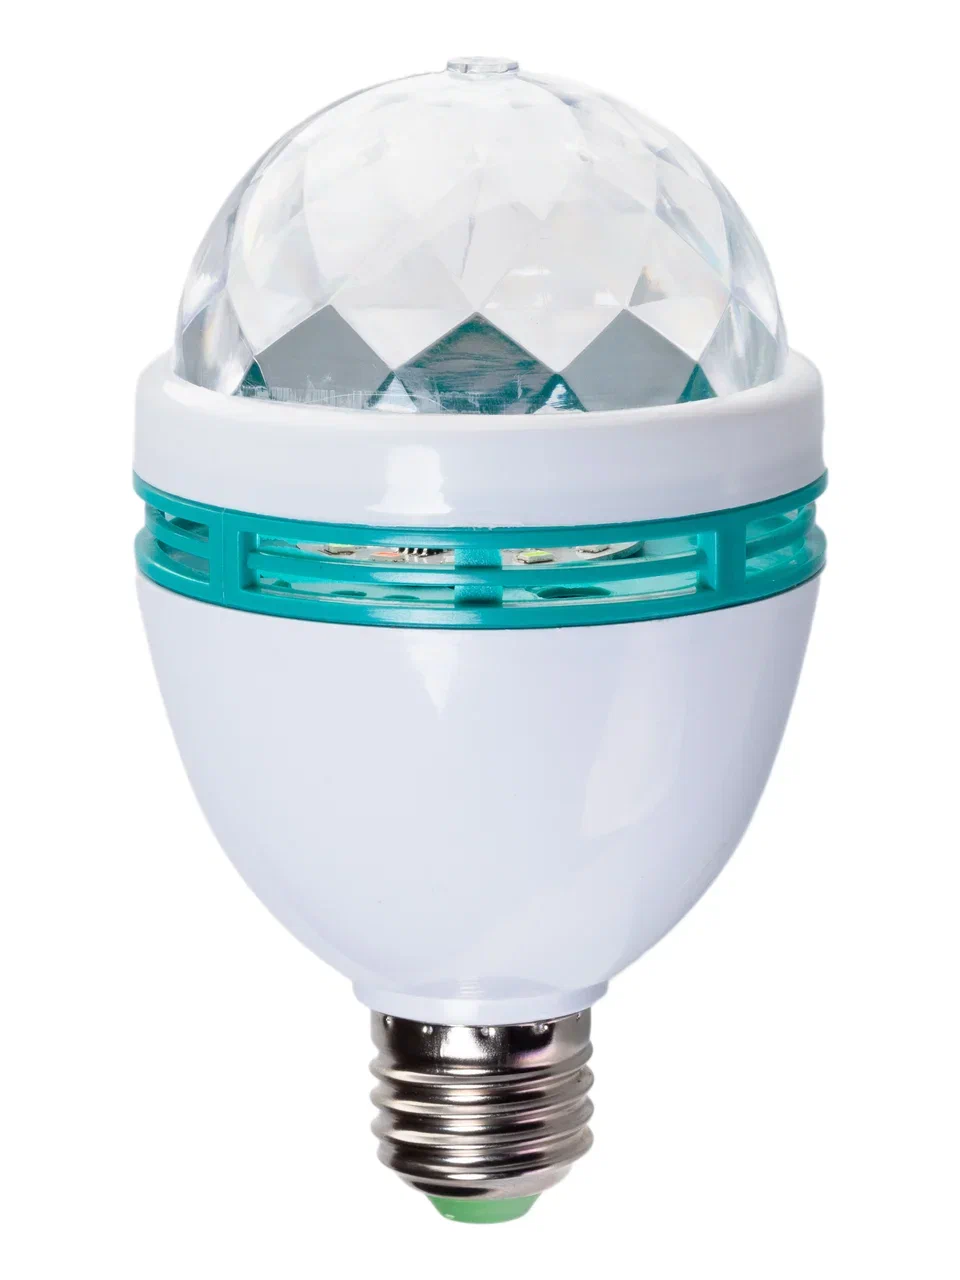 Диско-лампа светодиодная Феникс-Презент LED одноцокольная, 6Вт, 220В, 88031, 1 шт.